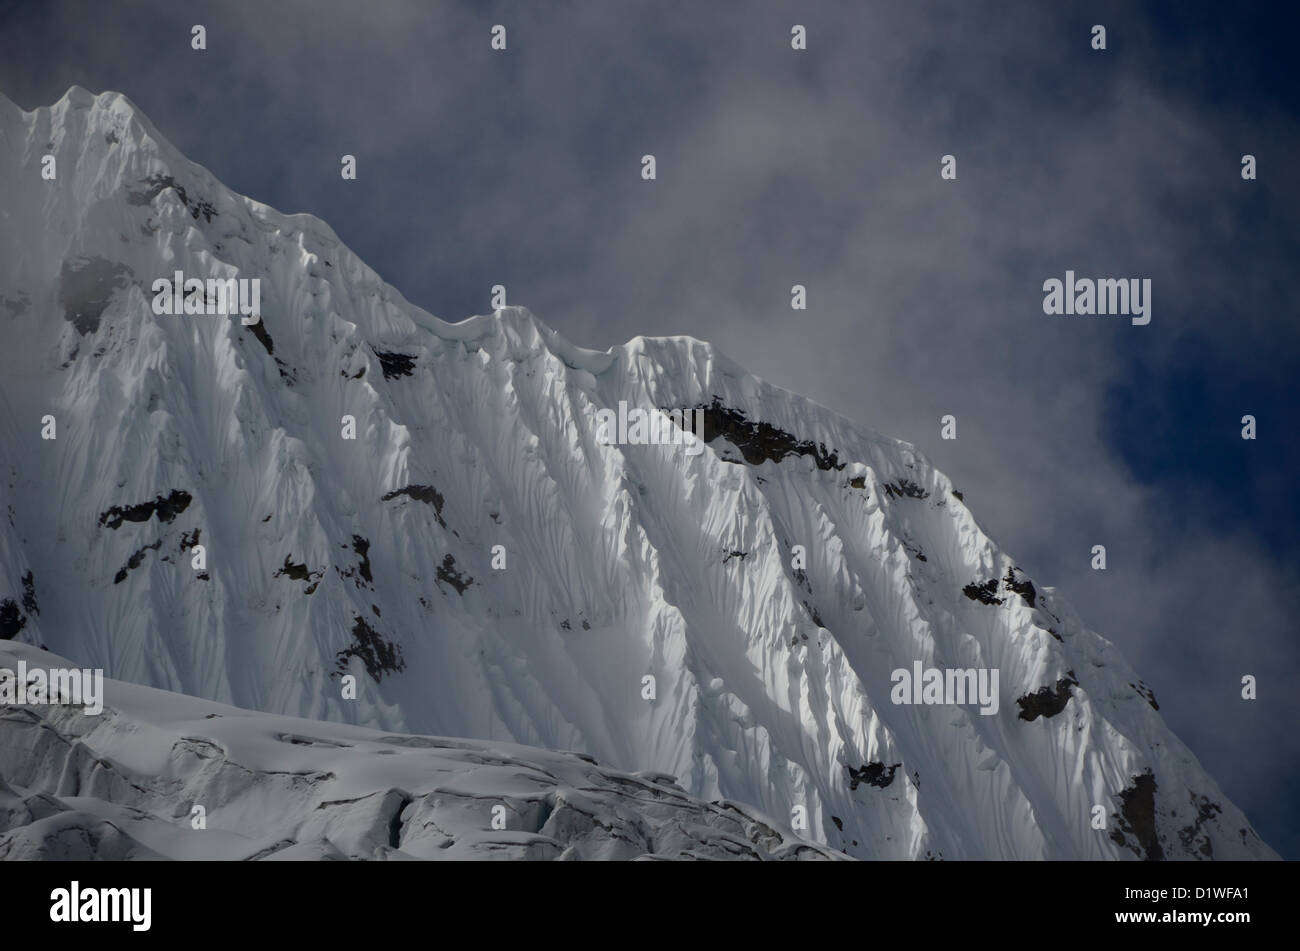 La texture spécifique à canneler célèbre les montagnes des Andes - c'est le Chacraraju pic dans la Cordillère Blanche au Pérou Banque D'Images